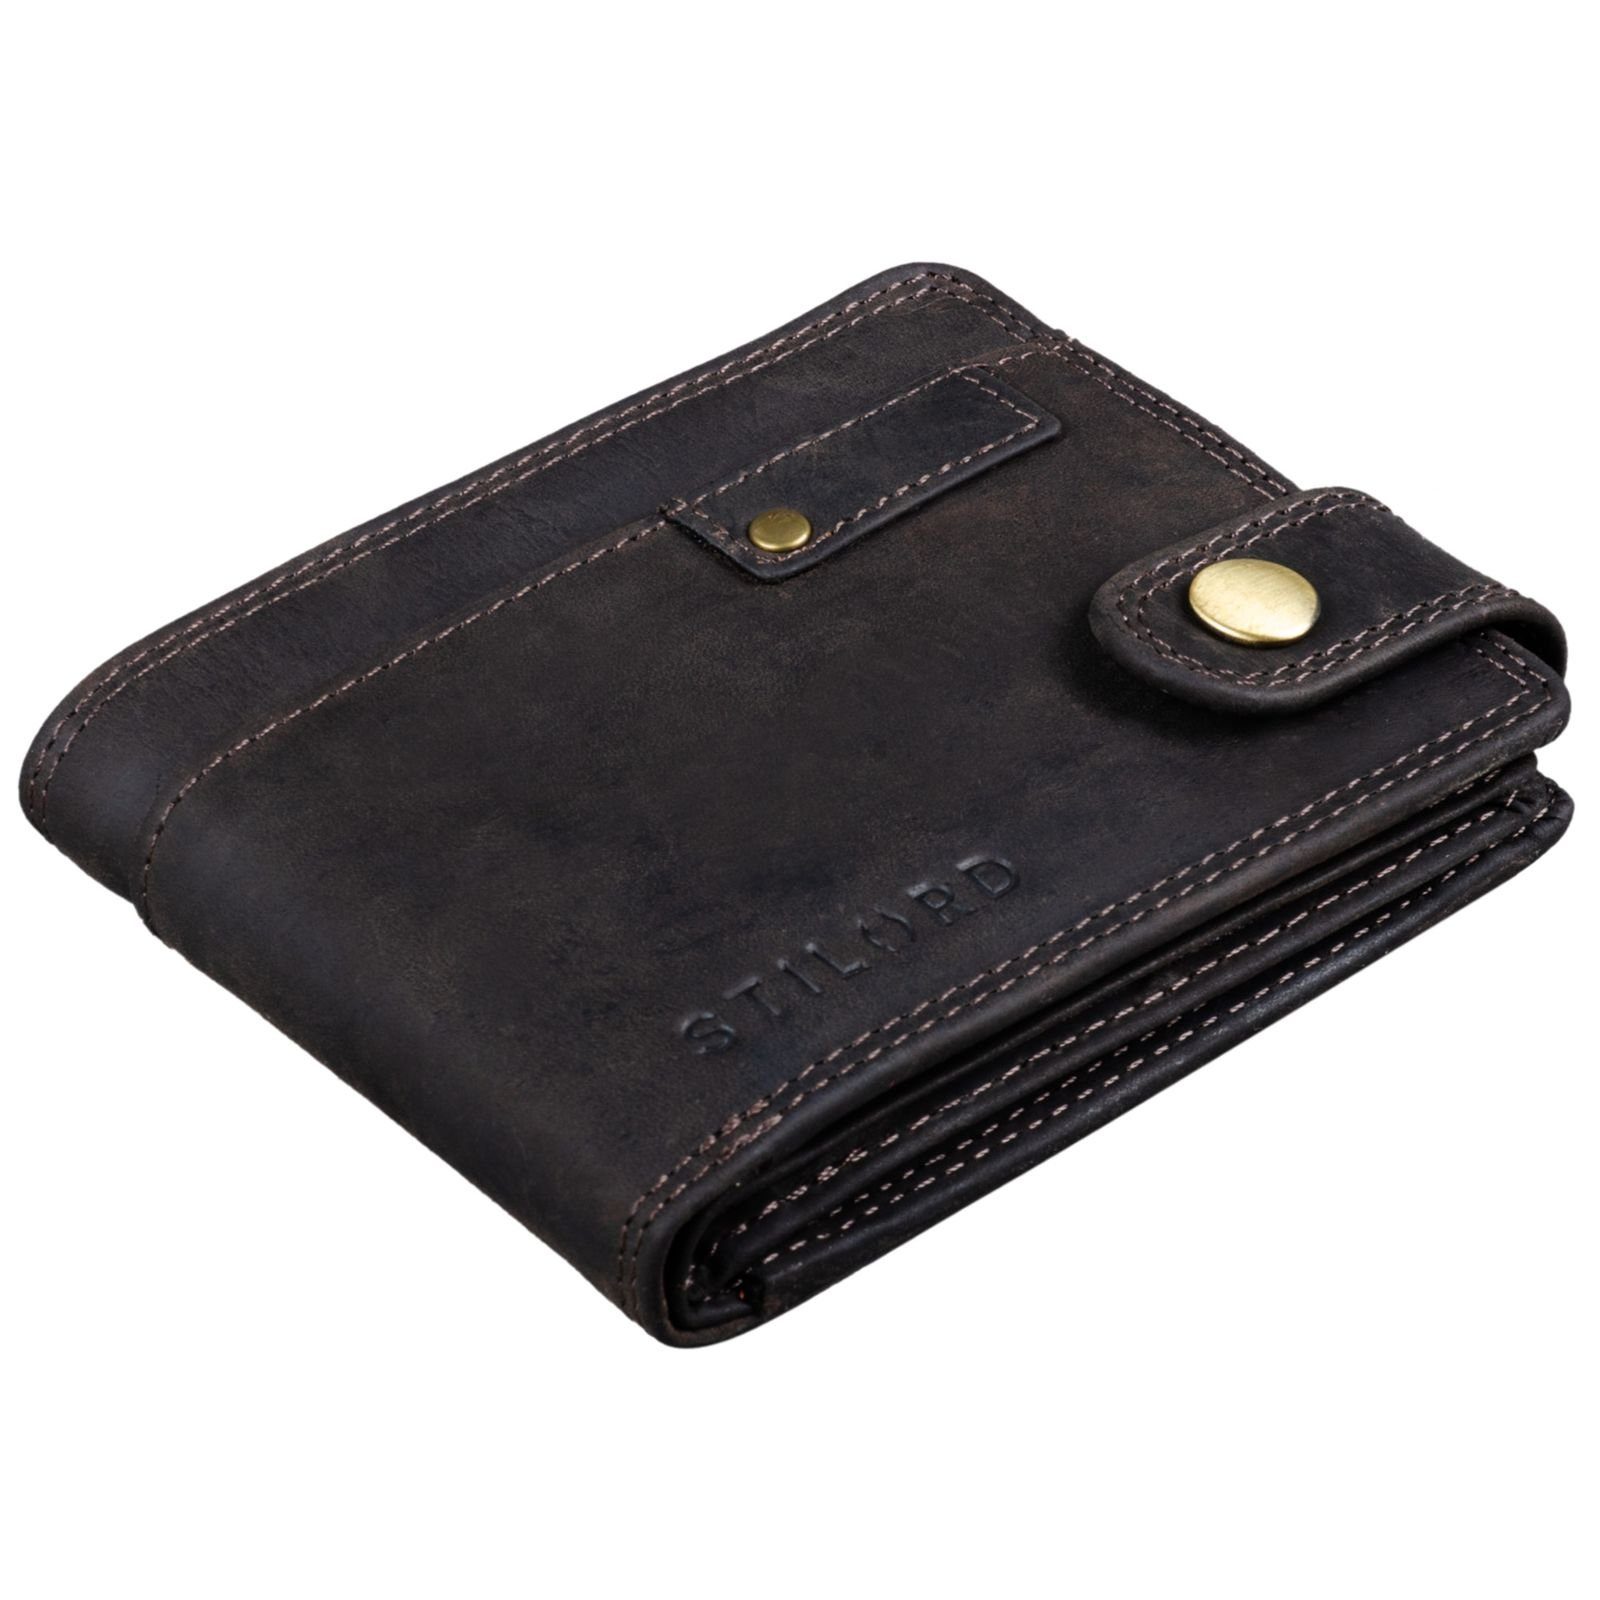 Herren braun NFC und STILORD "Finley" dunkel RFID Geldbörse - Geldbörse Leder